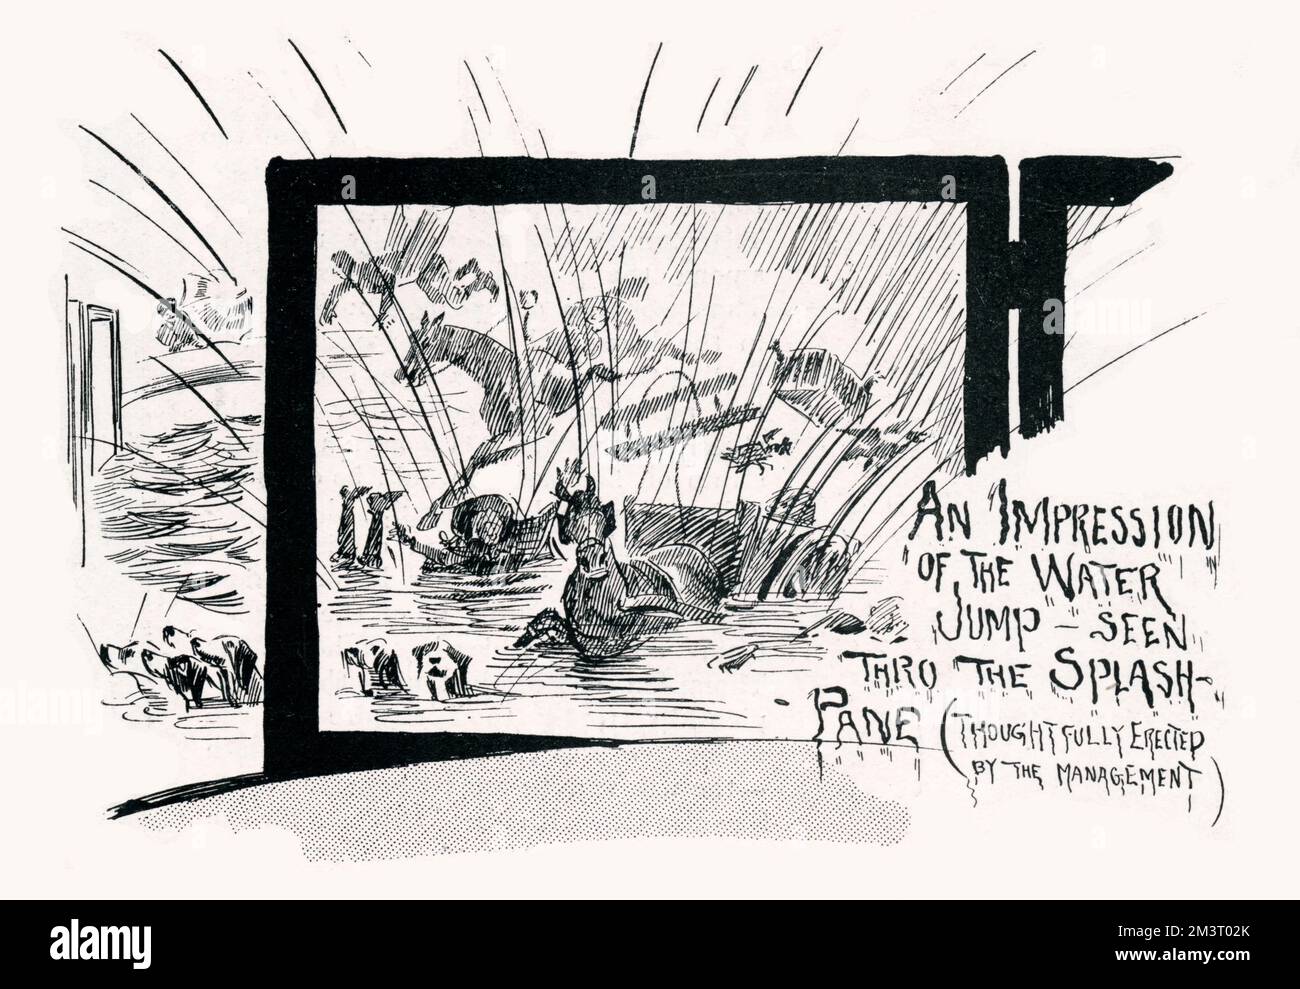 Das große Finale von „Tally-ho“, dem neuesten Wasserspiel am Londoner Hippodrom, das vom Publikum durch die „Paneele“ gesehen wurde - Glasbarrieren, die die Arena umkreisen, um sicherzustellen, dass die Ställe nicht durchnässt werden, wenn die Pferde in den Panzer stürzten. Datum: 1901 Stockfoto